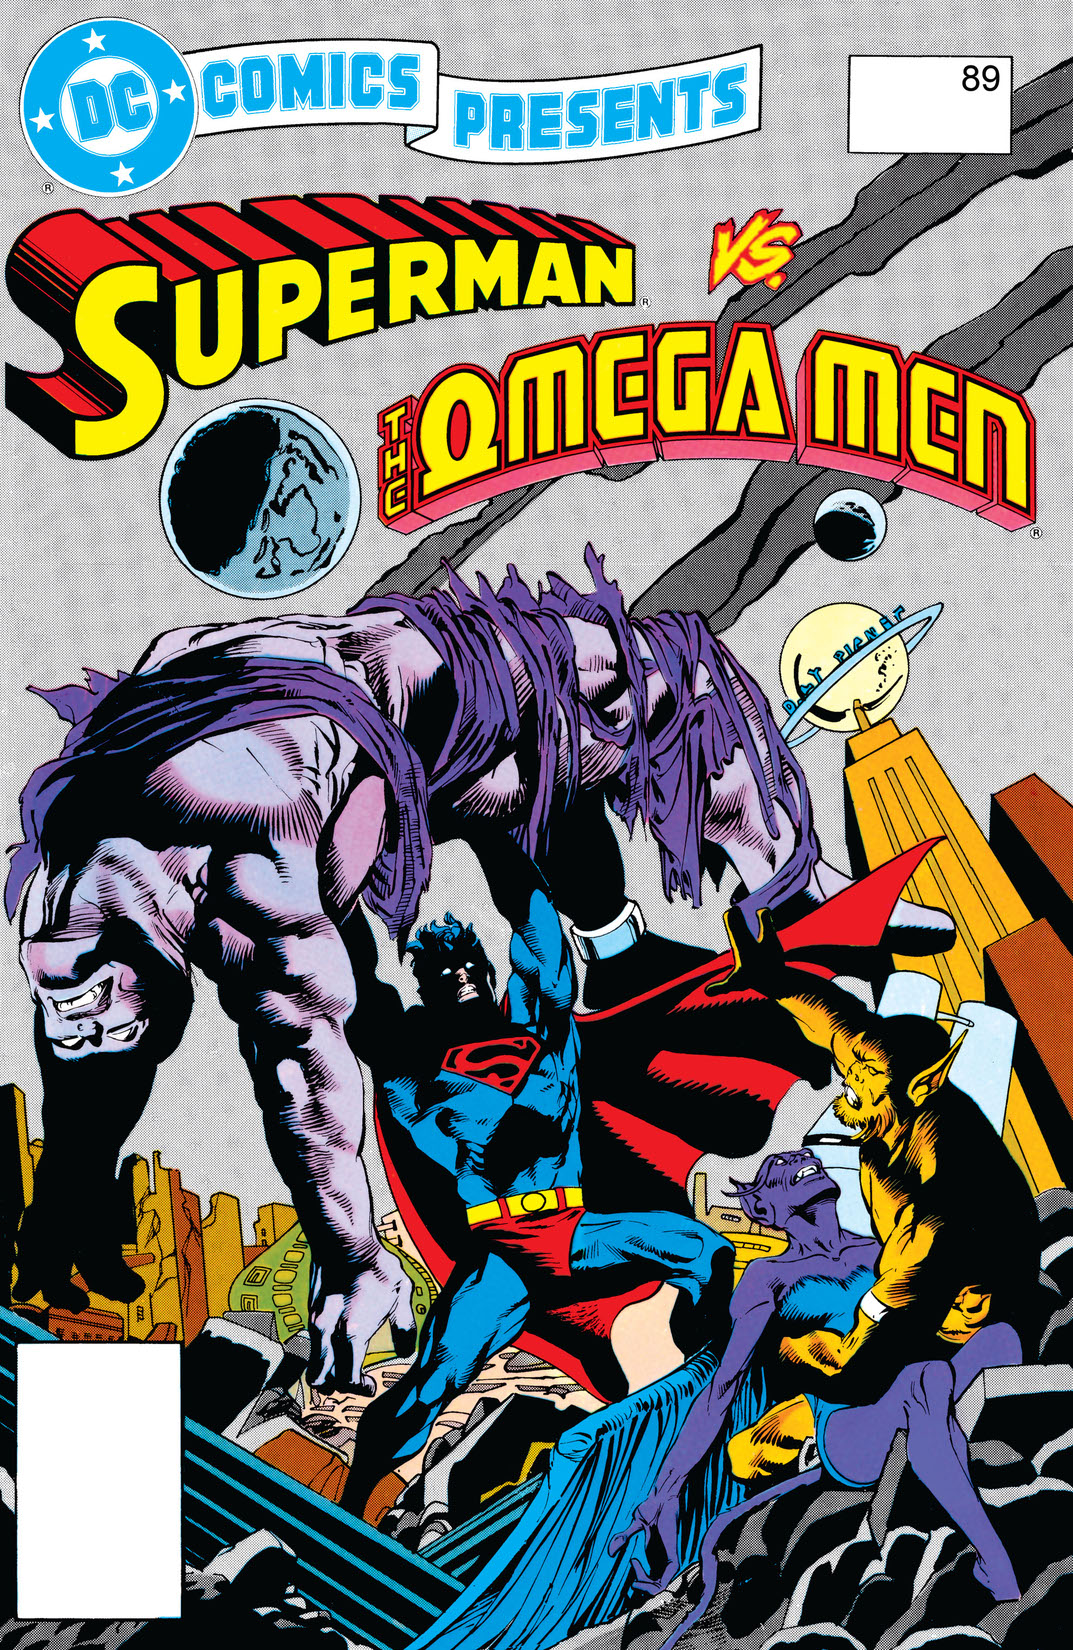 DC Comics Presents (1978-) #89 preview images